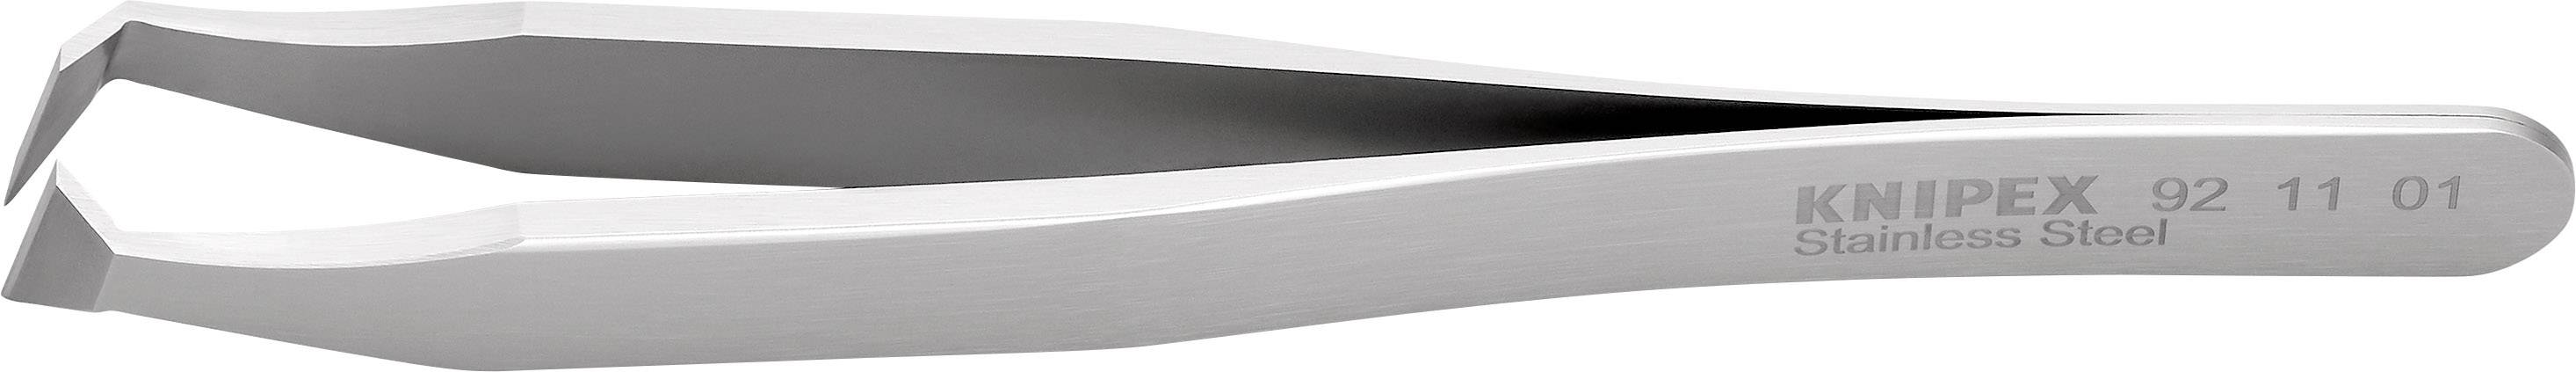 KNIPEX 92 11 01 Schneidpinzette 1 Stück Flach-breit 115 mm